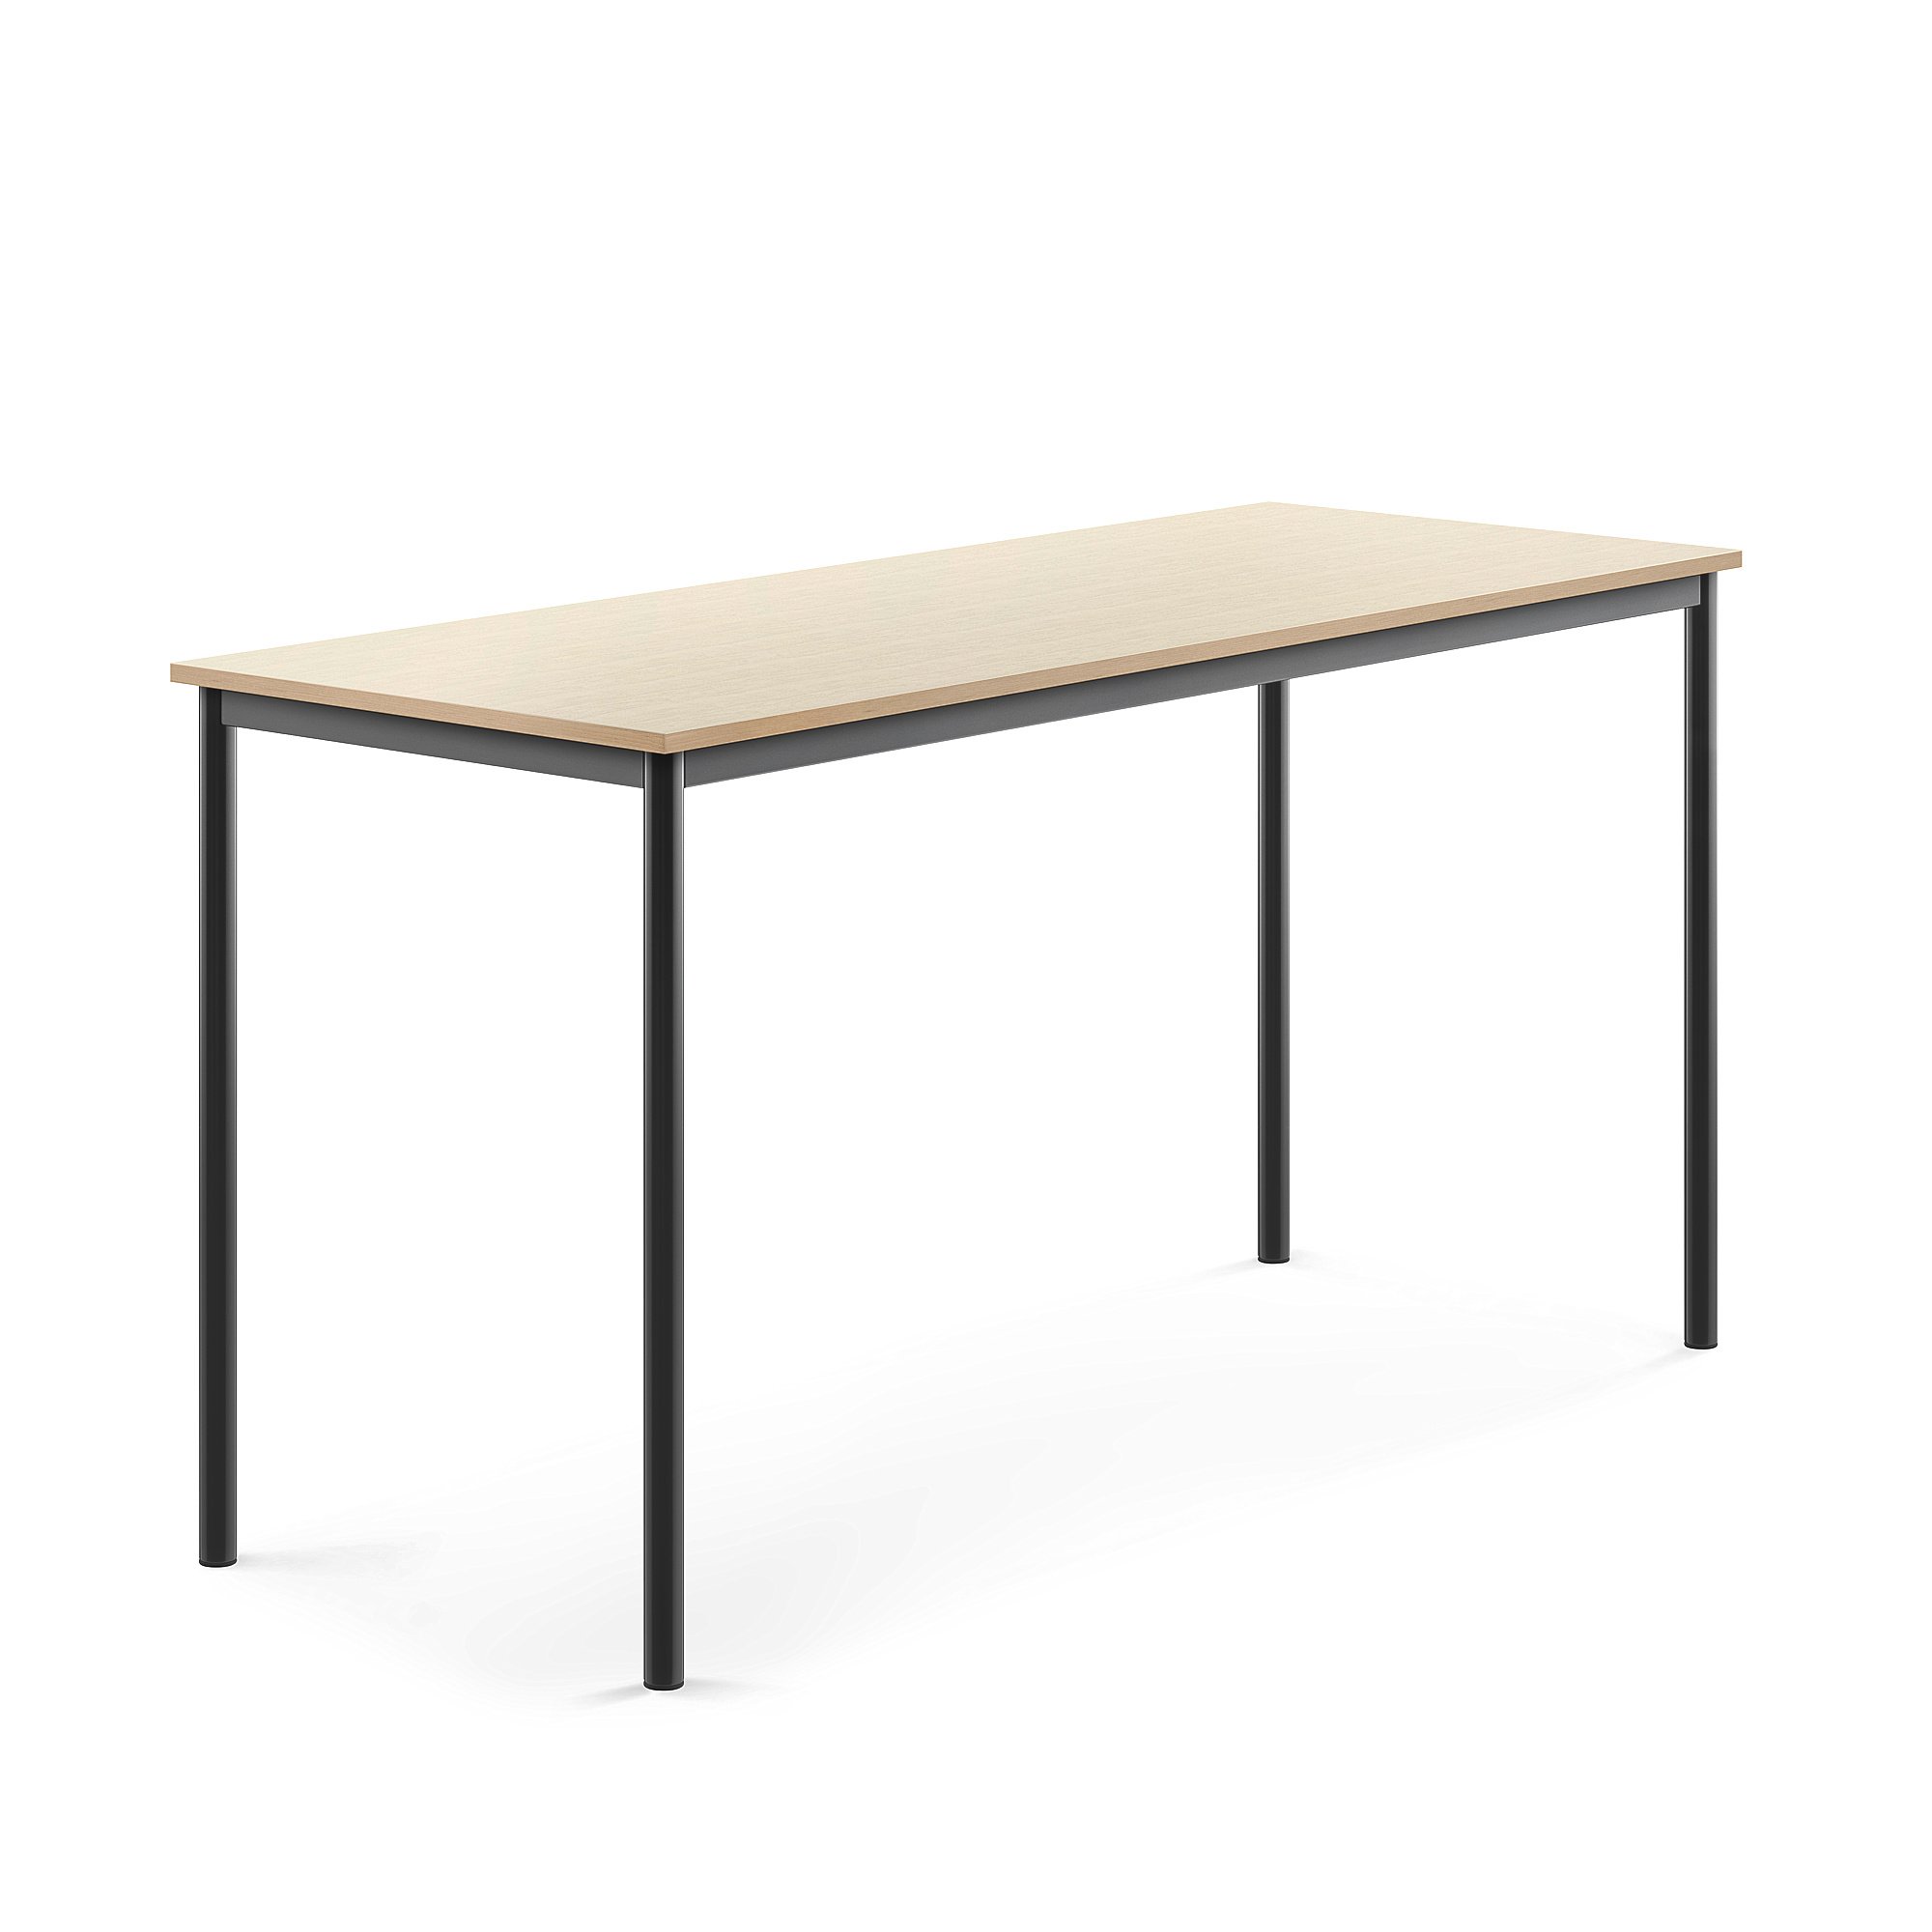 Stůl SONITUS, 1800x700x900 mm, antracitově šedé nohy, HPL deska tlumící hluk, bříza